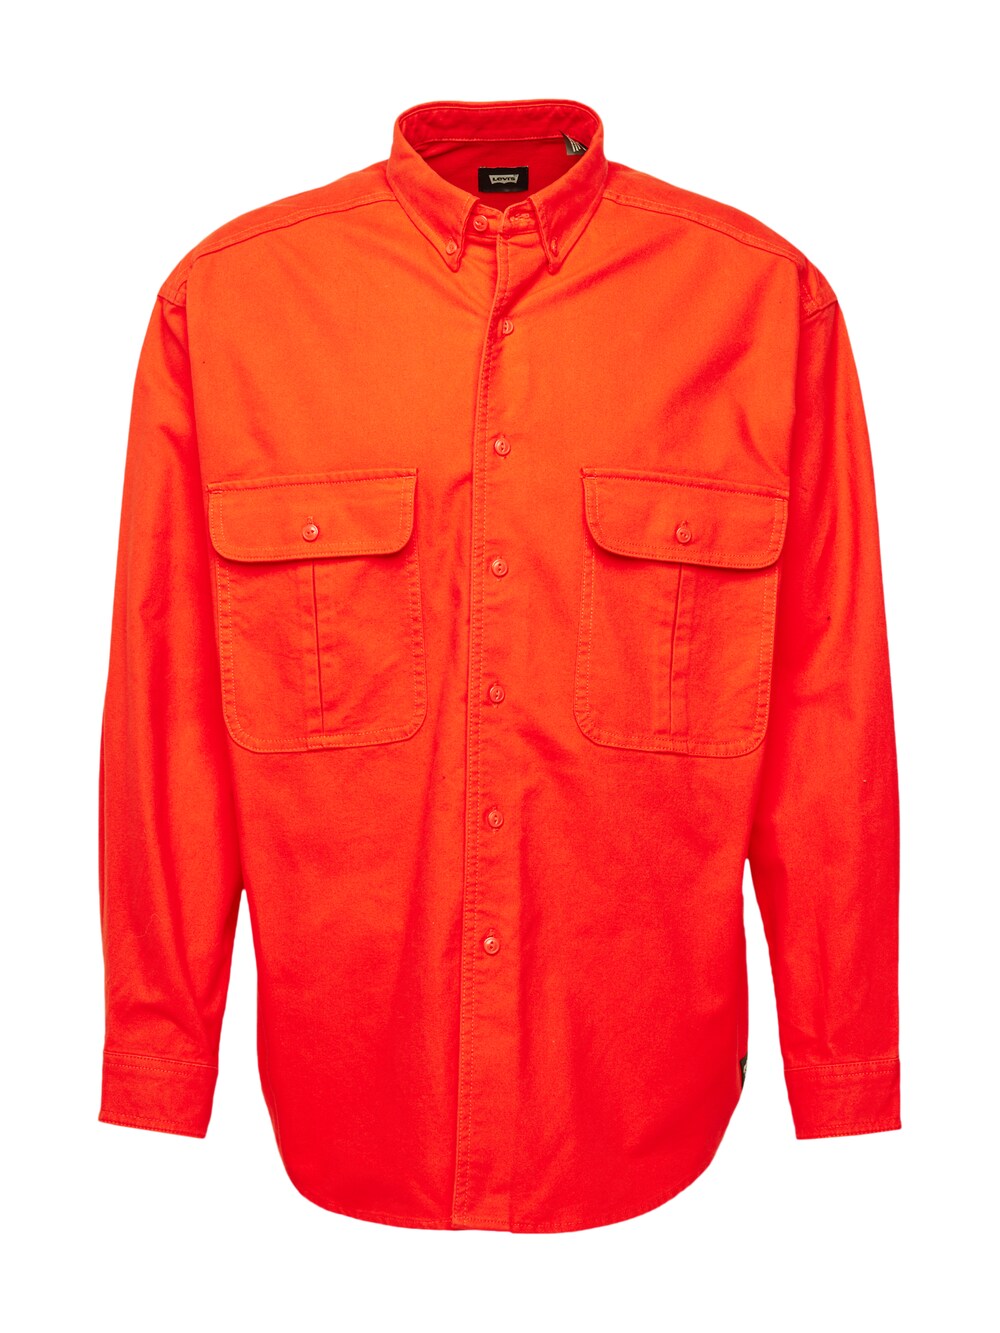 Межсезонная куртка Levis Skateboarding, оранжево-красный